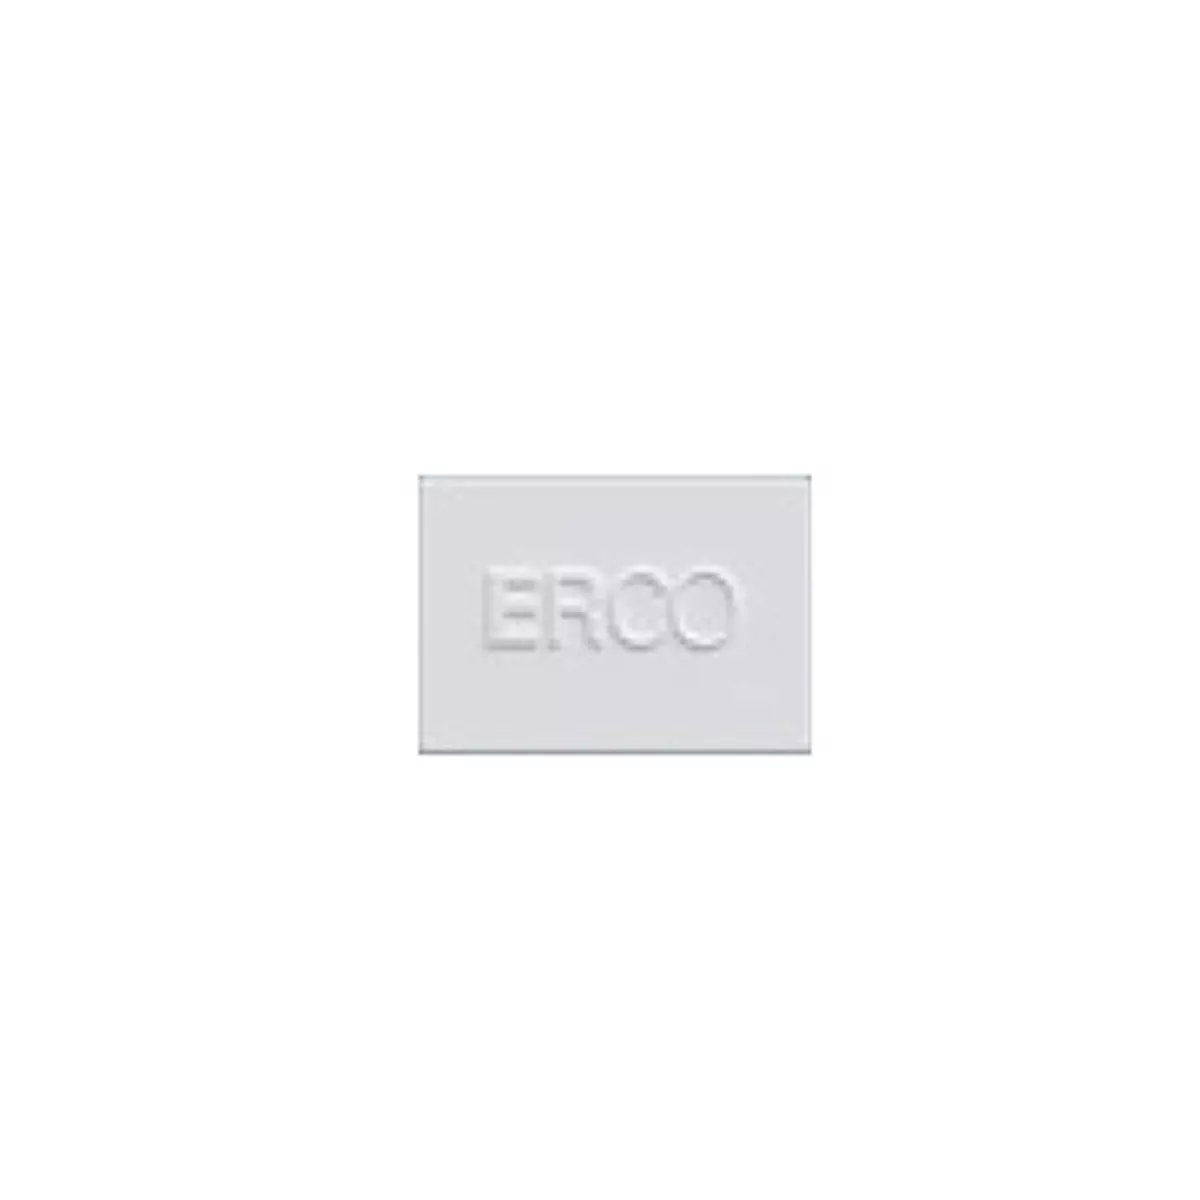 #1 - ERCO endeplade til Minirail-skinne, hvid